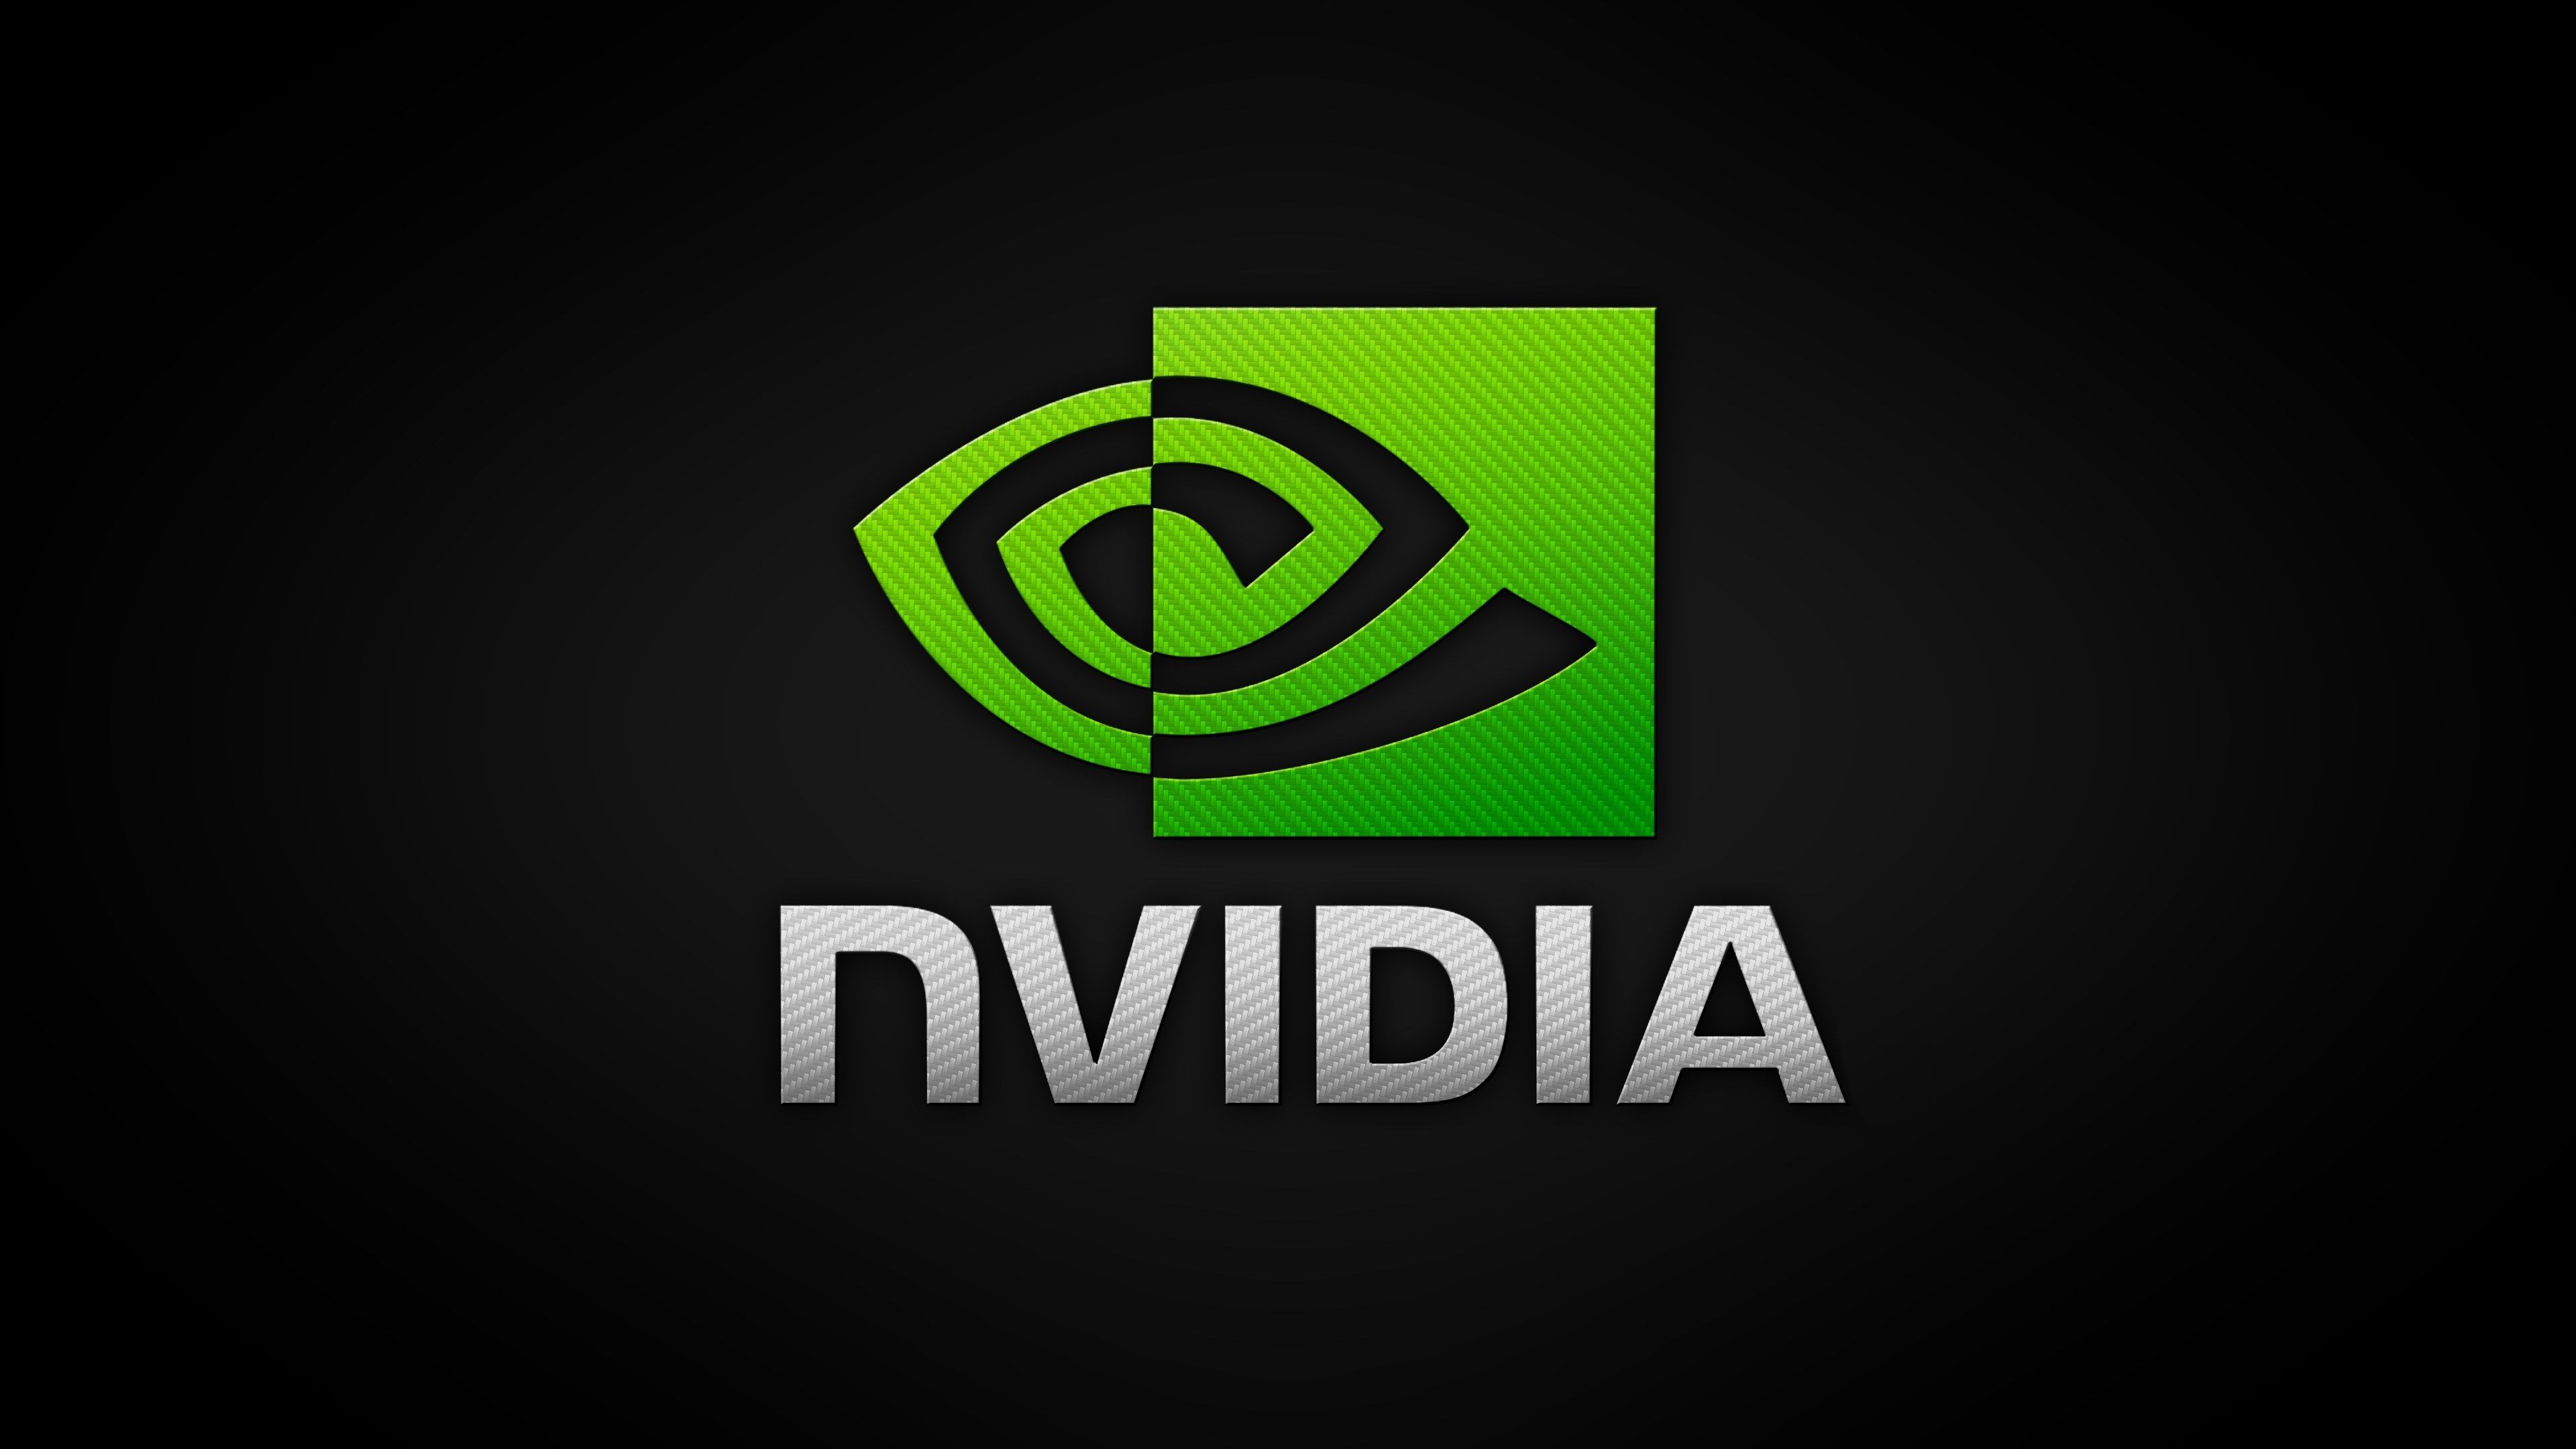 Obrazek przedstawia logo firmy NVIDIA.